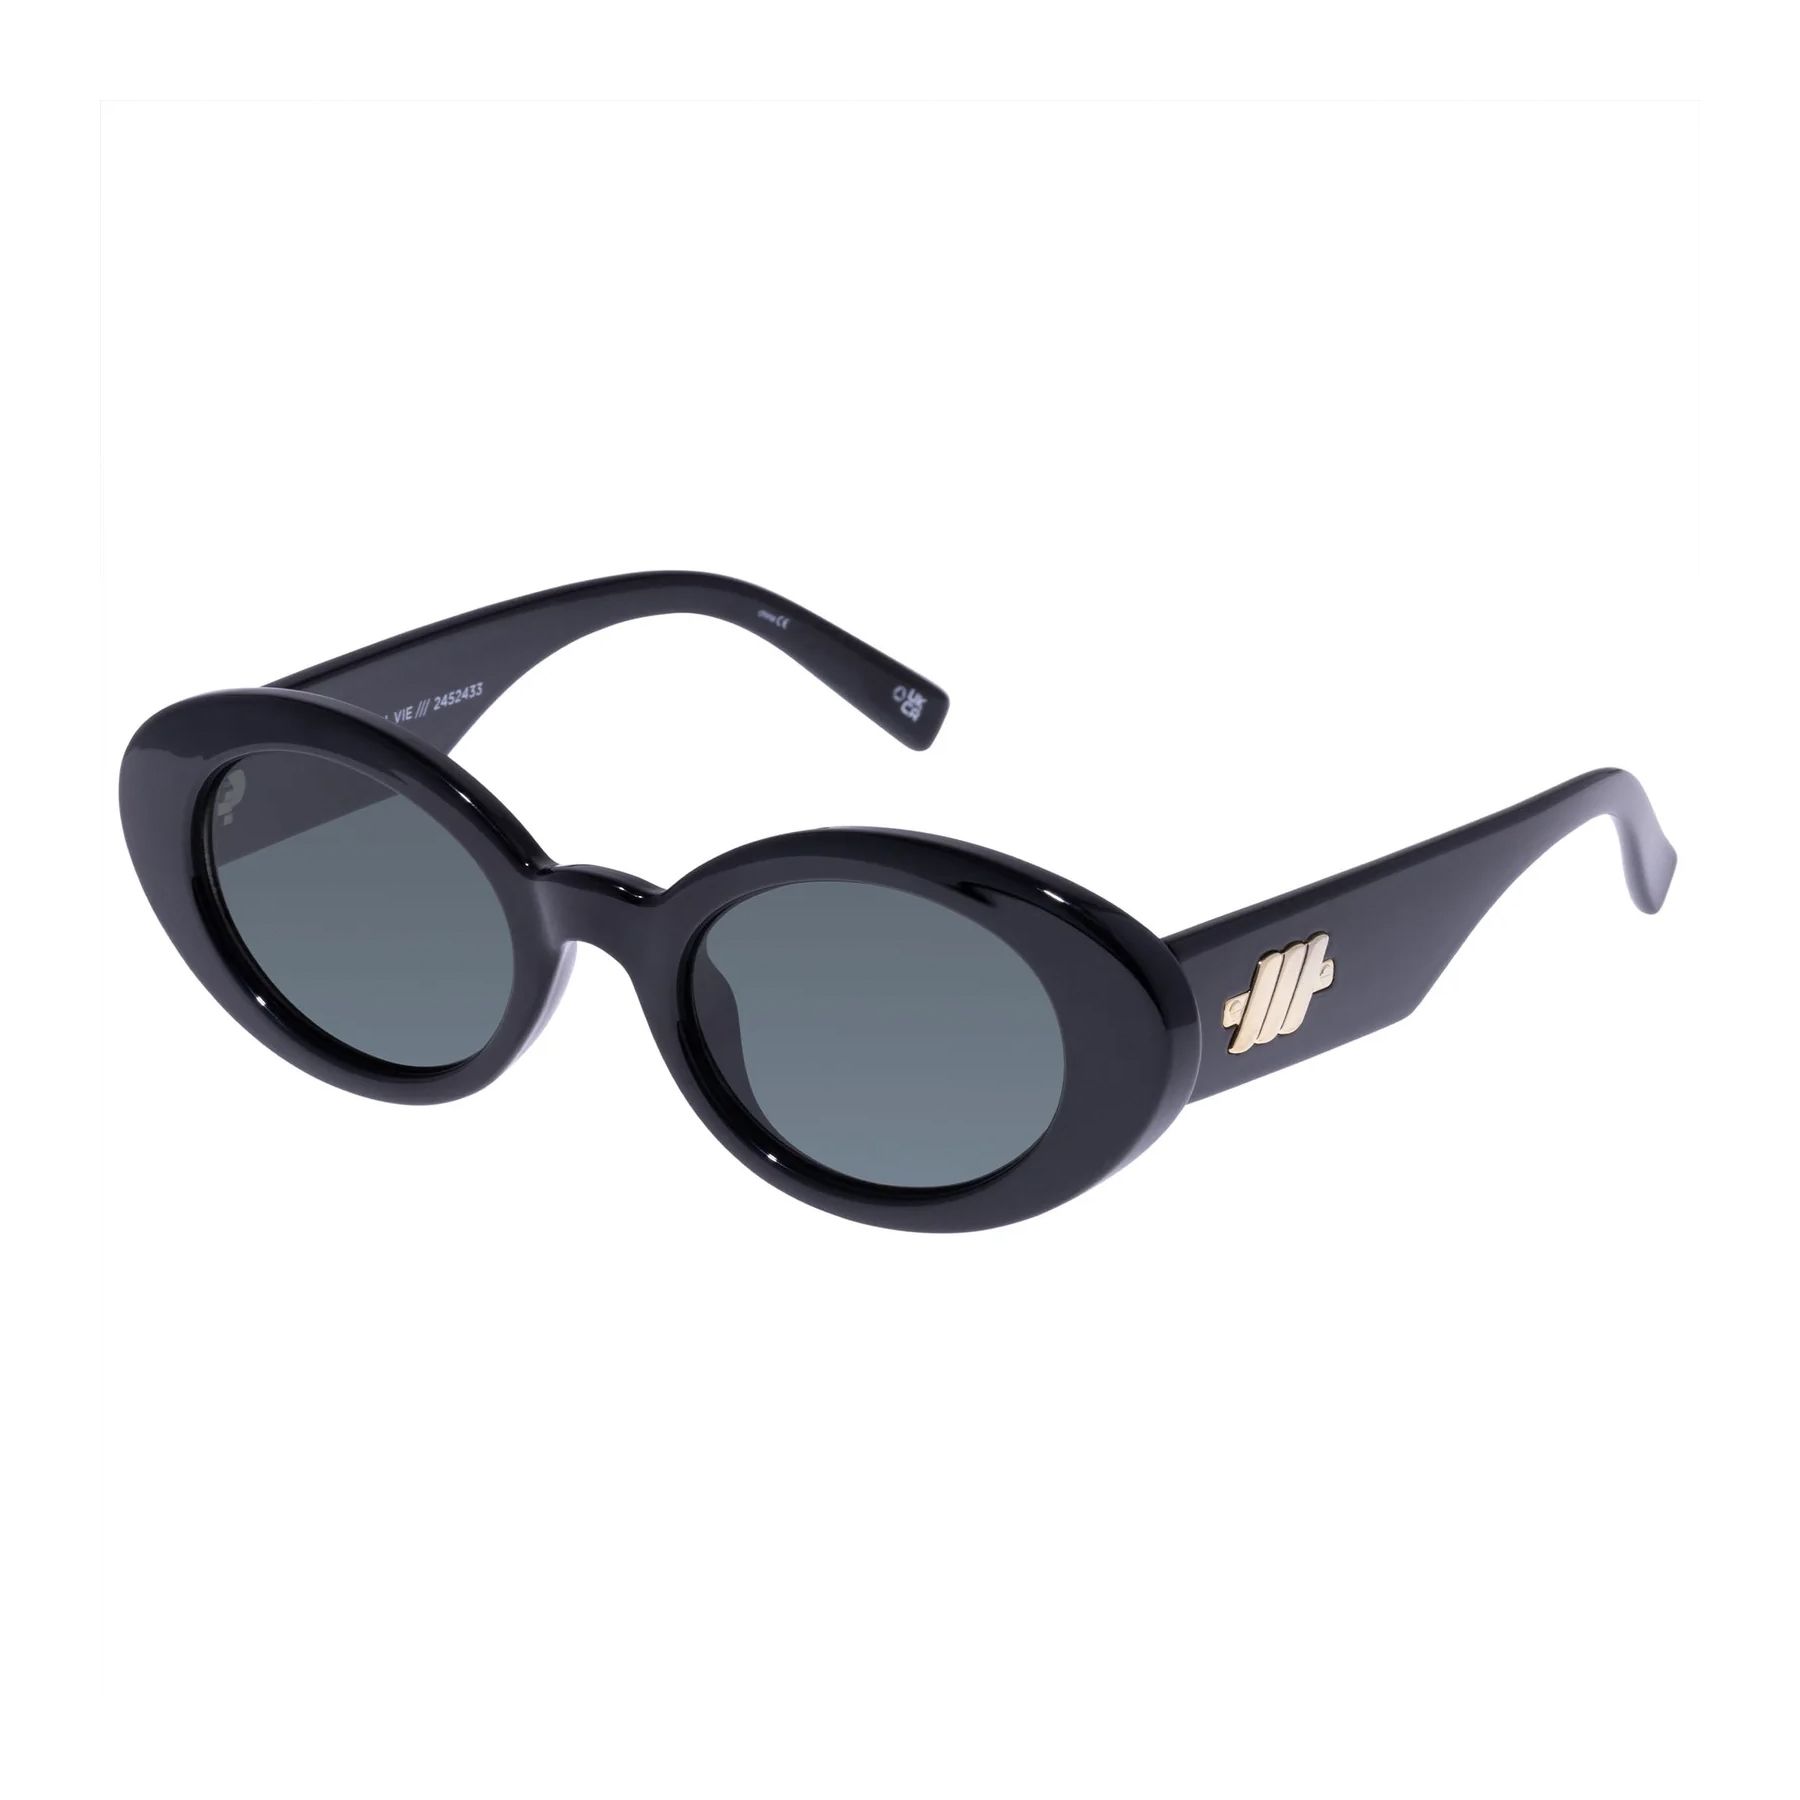 NOUVEAU VIE Oval Sunglasses BLACK - size 50